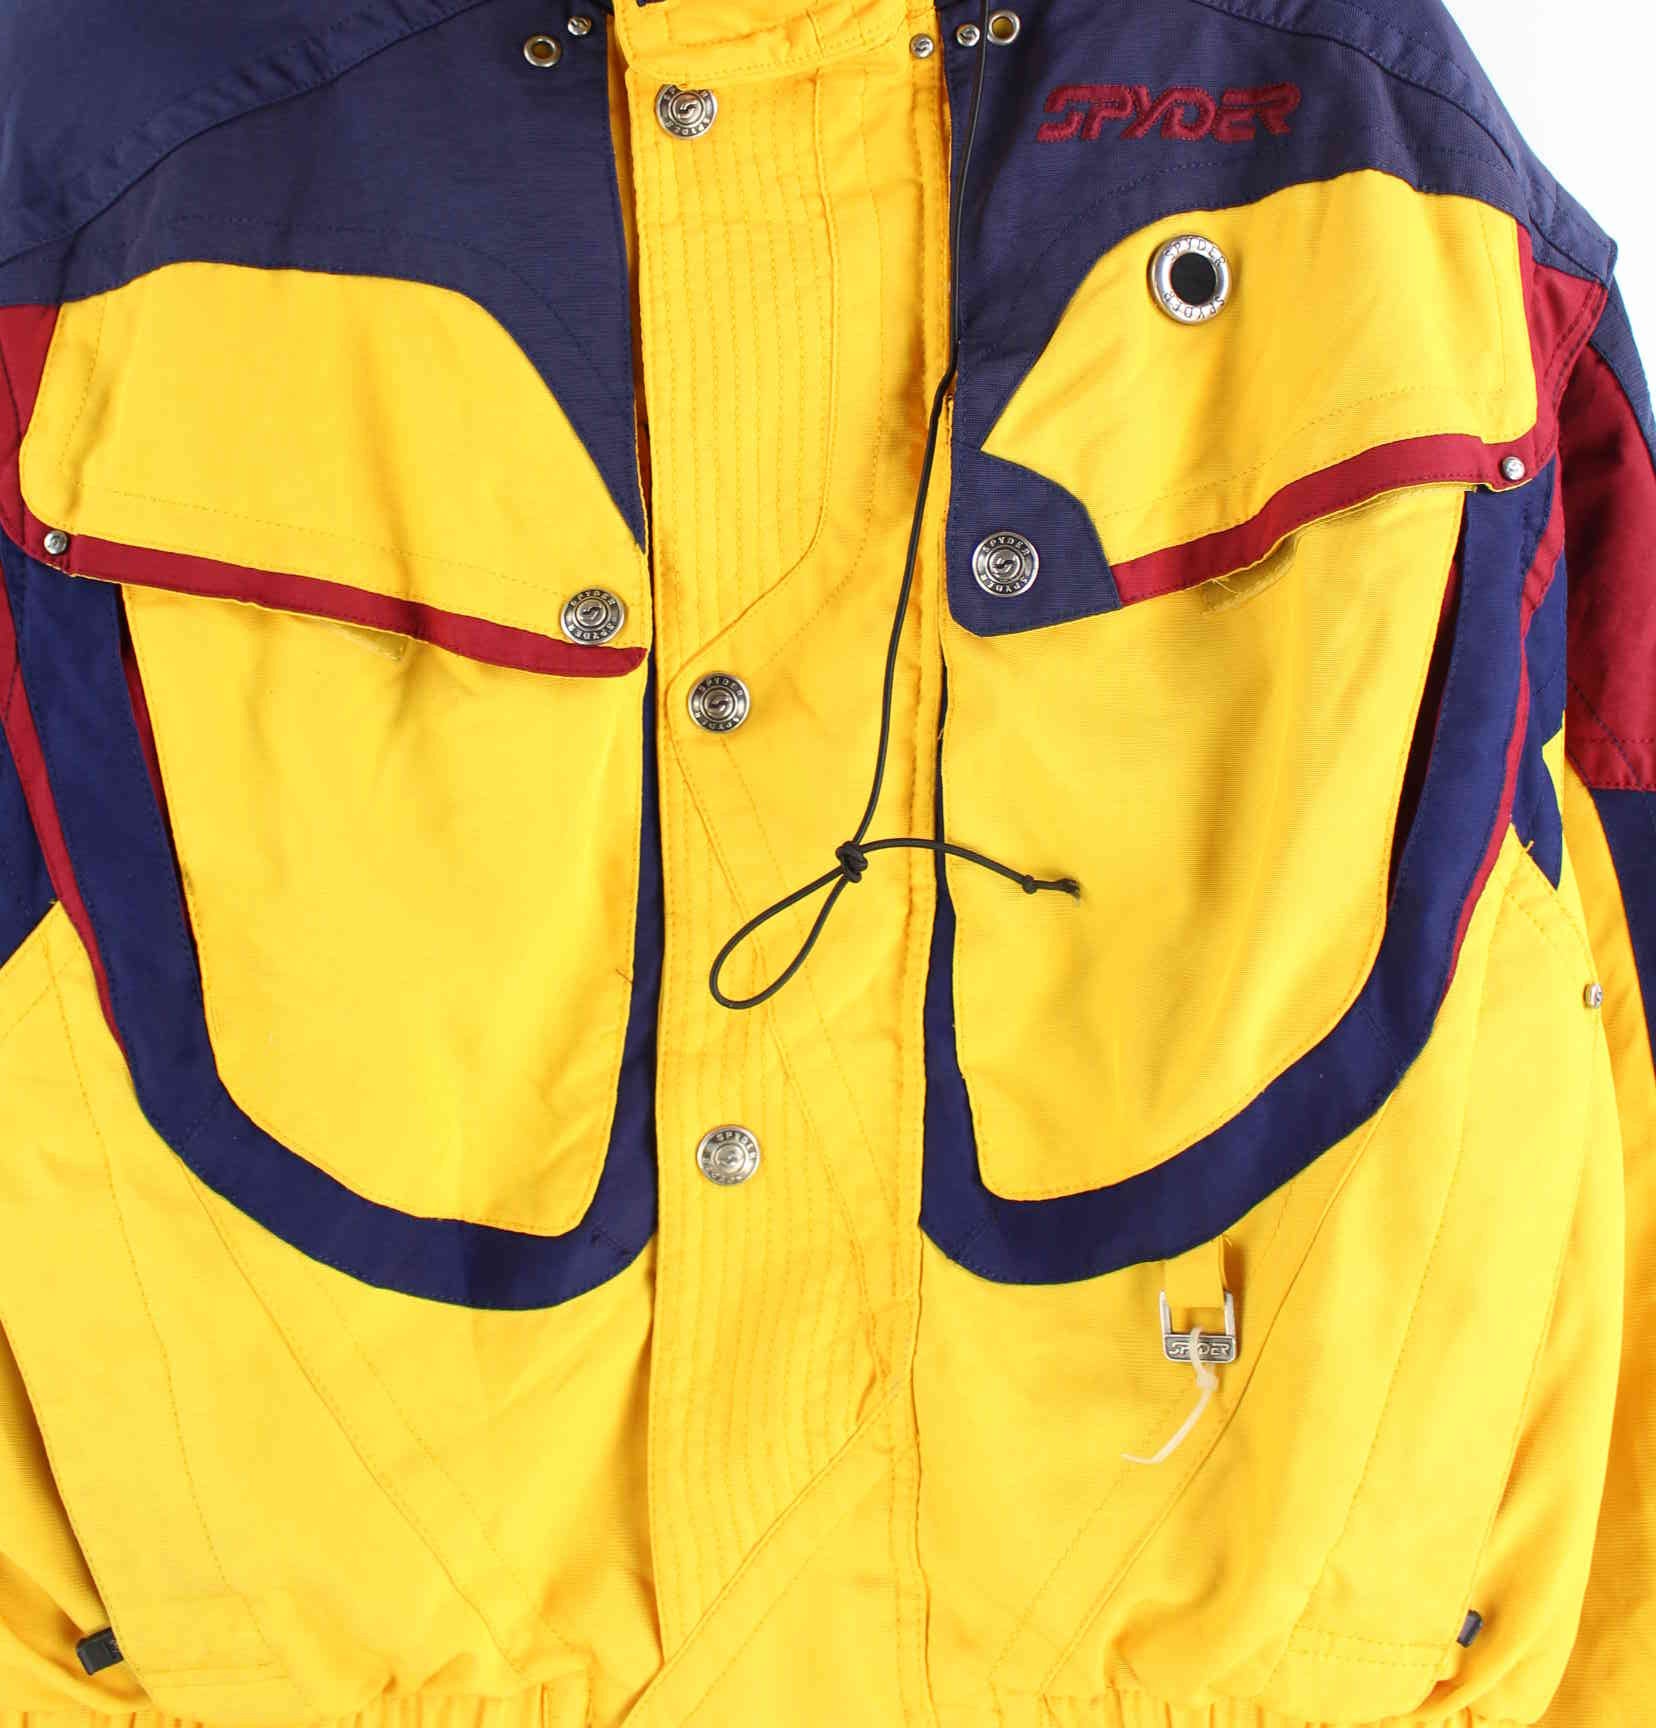 Spyder 90s Vintage Ski Jacke Gelb M (detail image 1)